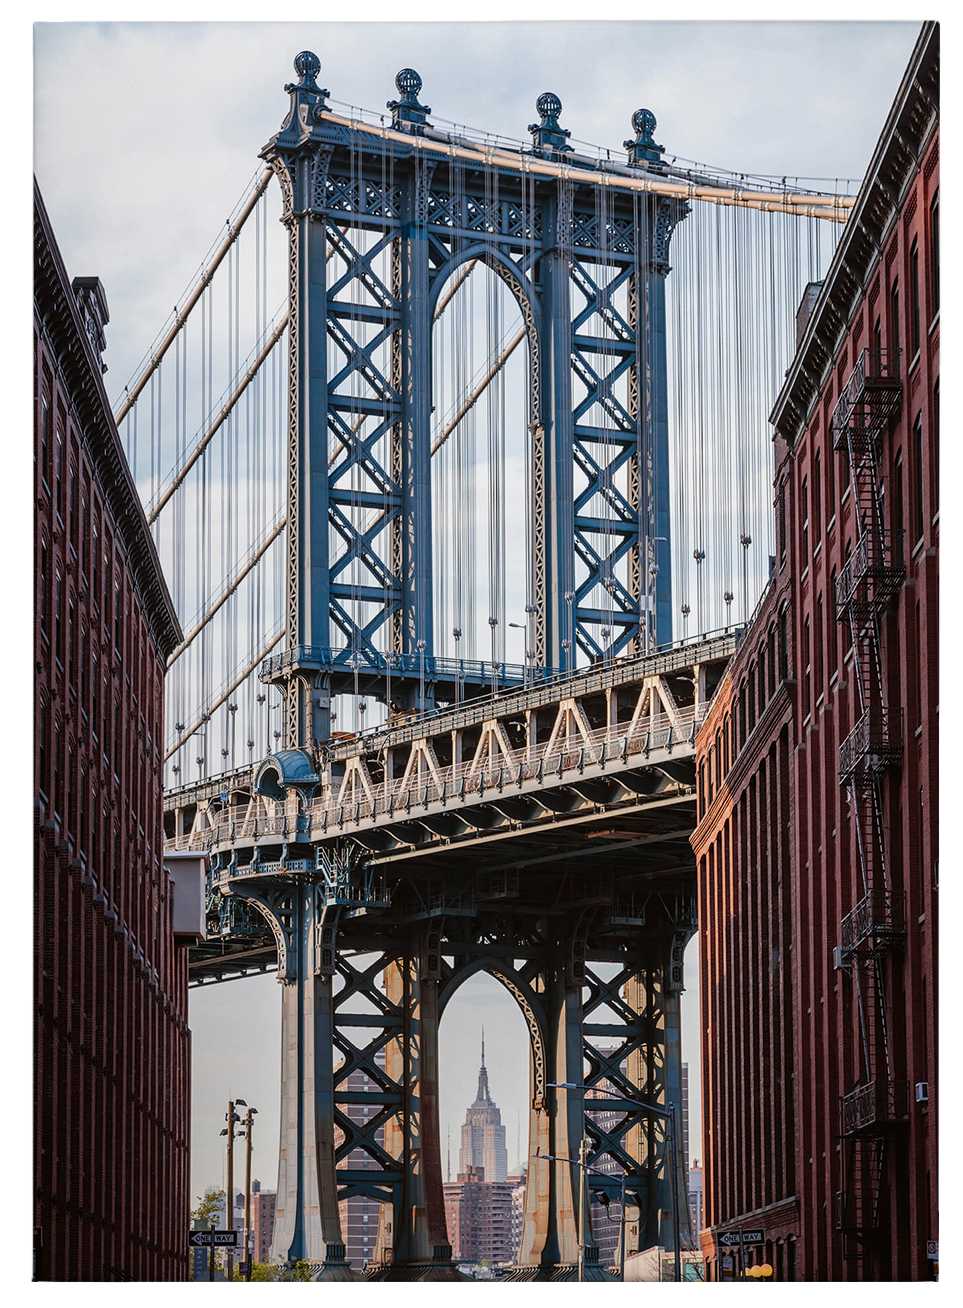             Cuadro en lienzo Puente de Brooklyn de Nueva York, foto de Colombo - 0,70 m x 0,50 m
        